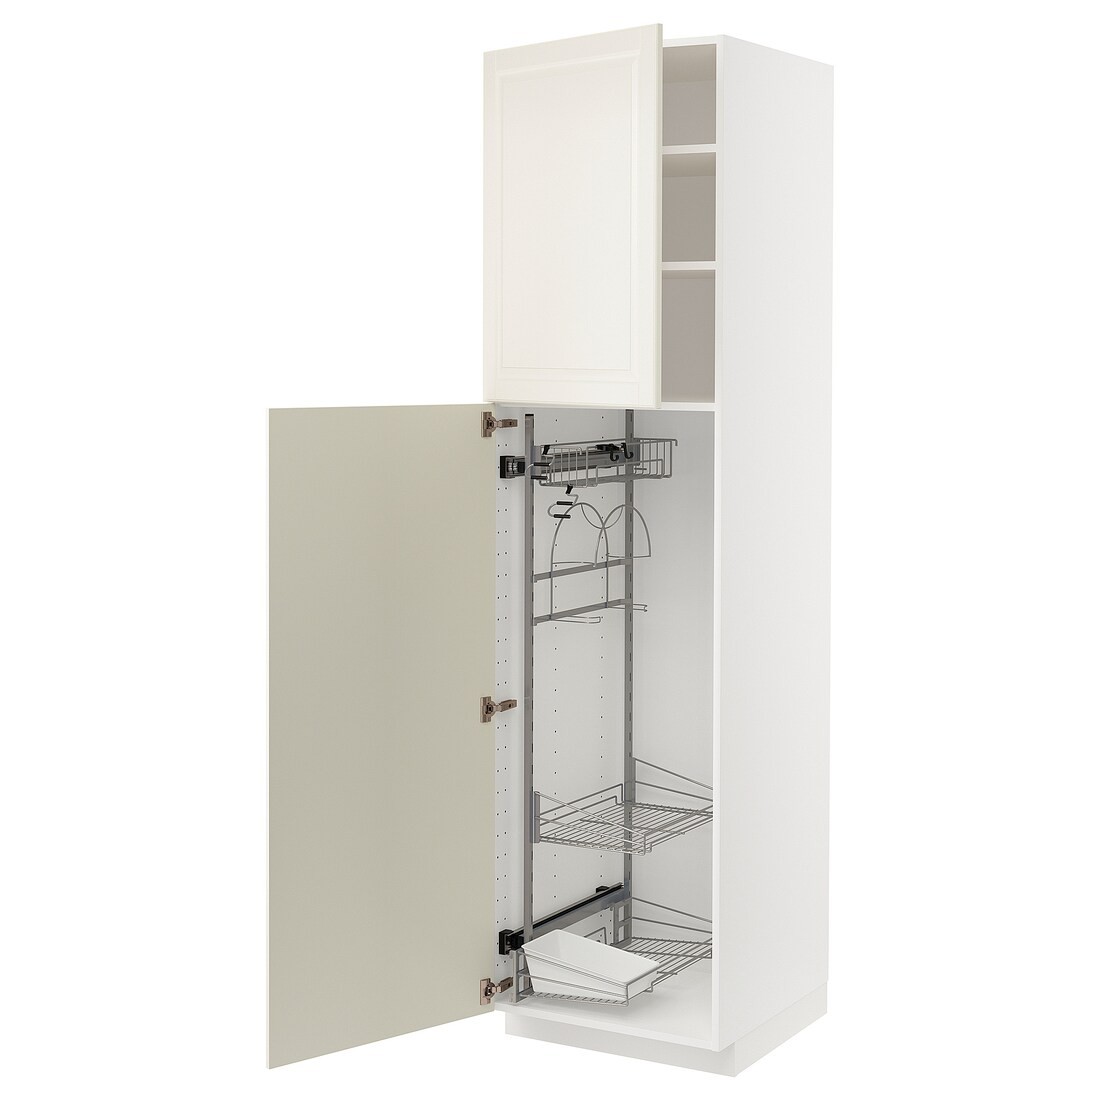 METOD МЕТОД Высокий шкаф с отделением для аксессуаров для уборки, белый / Bodbyn кремовый, 60x60x220 см